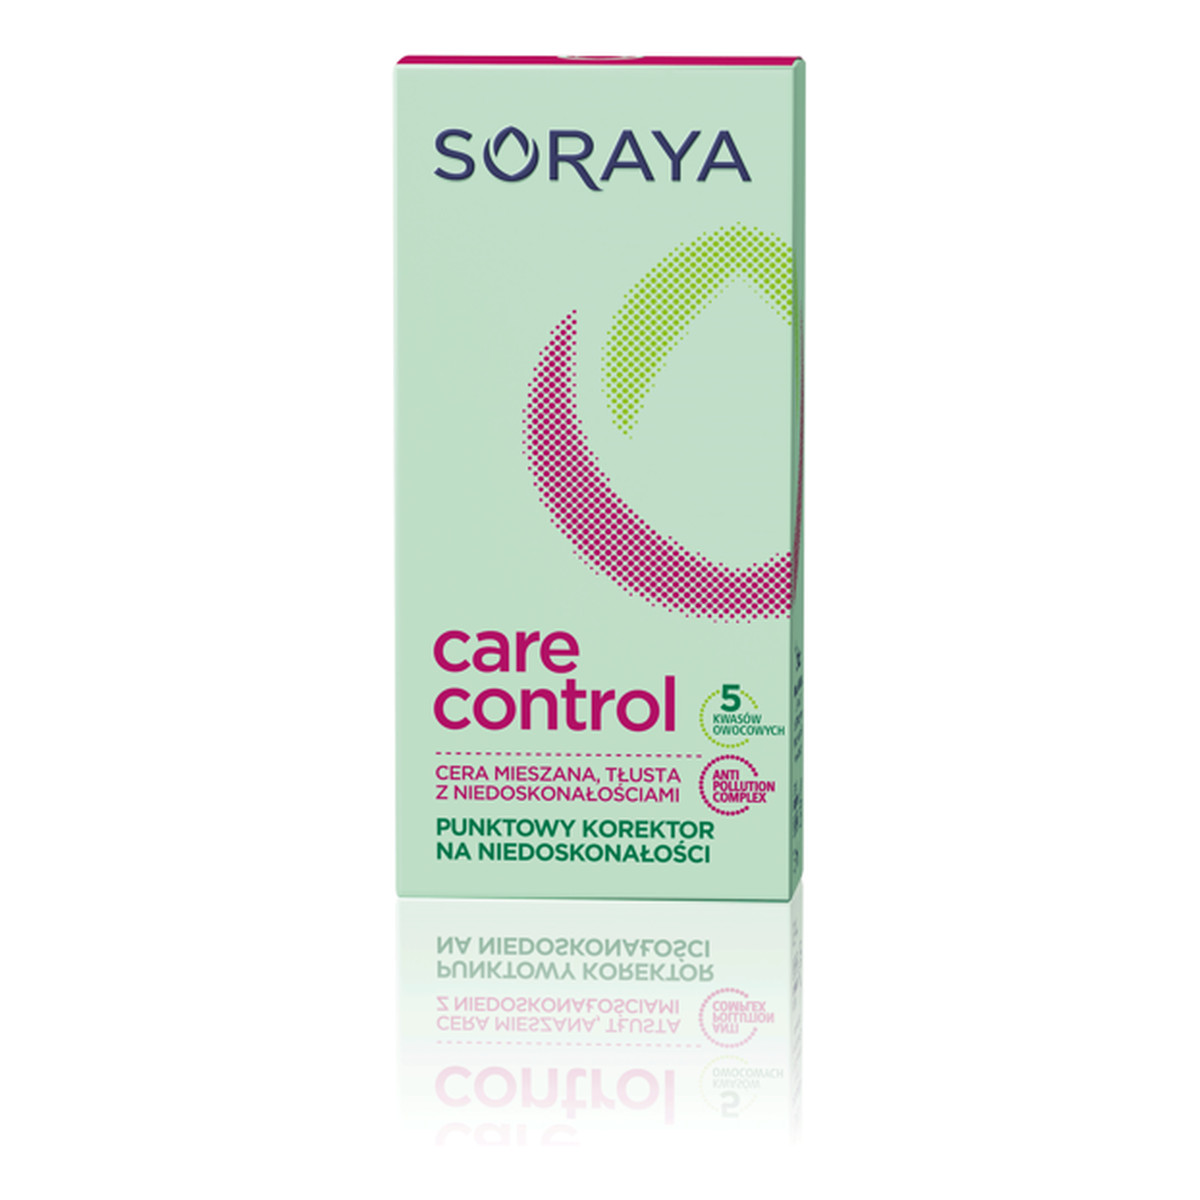 Soraya Care Control Korektor punktowy na niedoskonałości 15ml